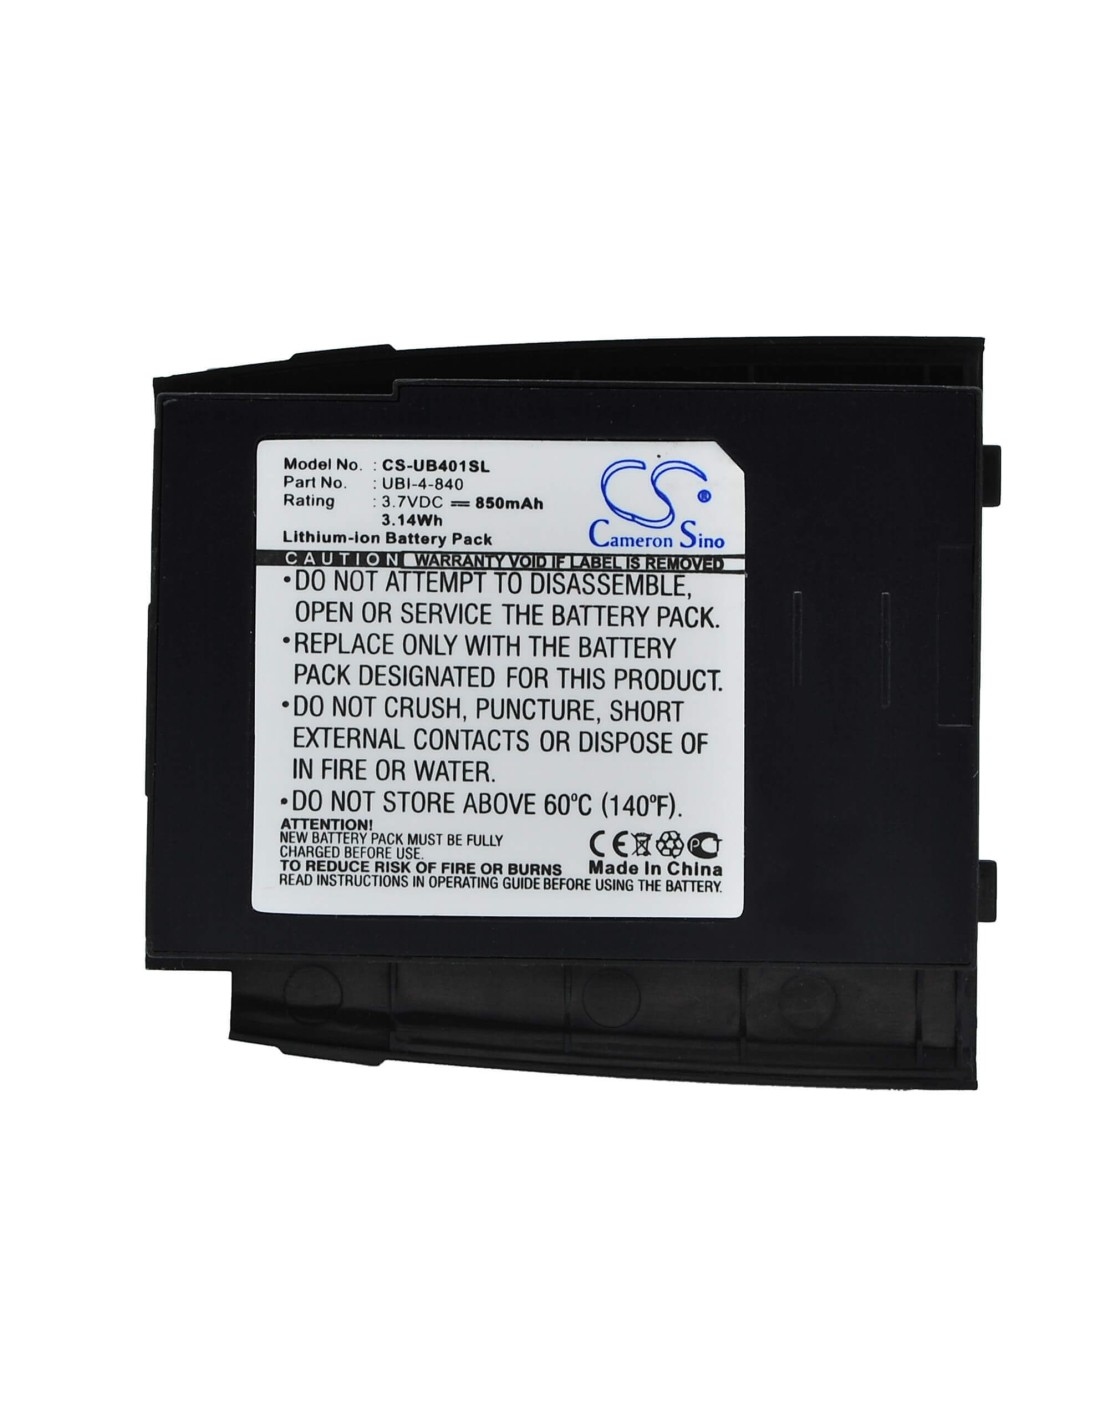 Battery for Gigabyte gSmart 3.7V, 850mAh - 3.15Wh